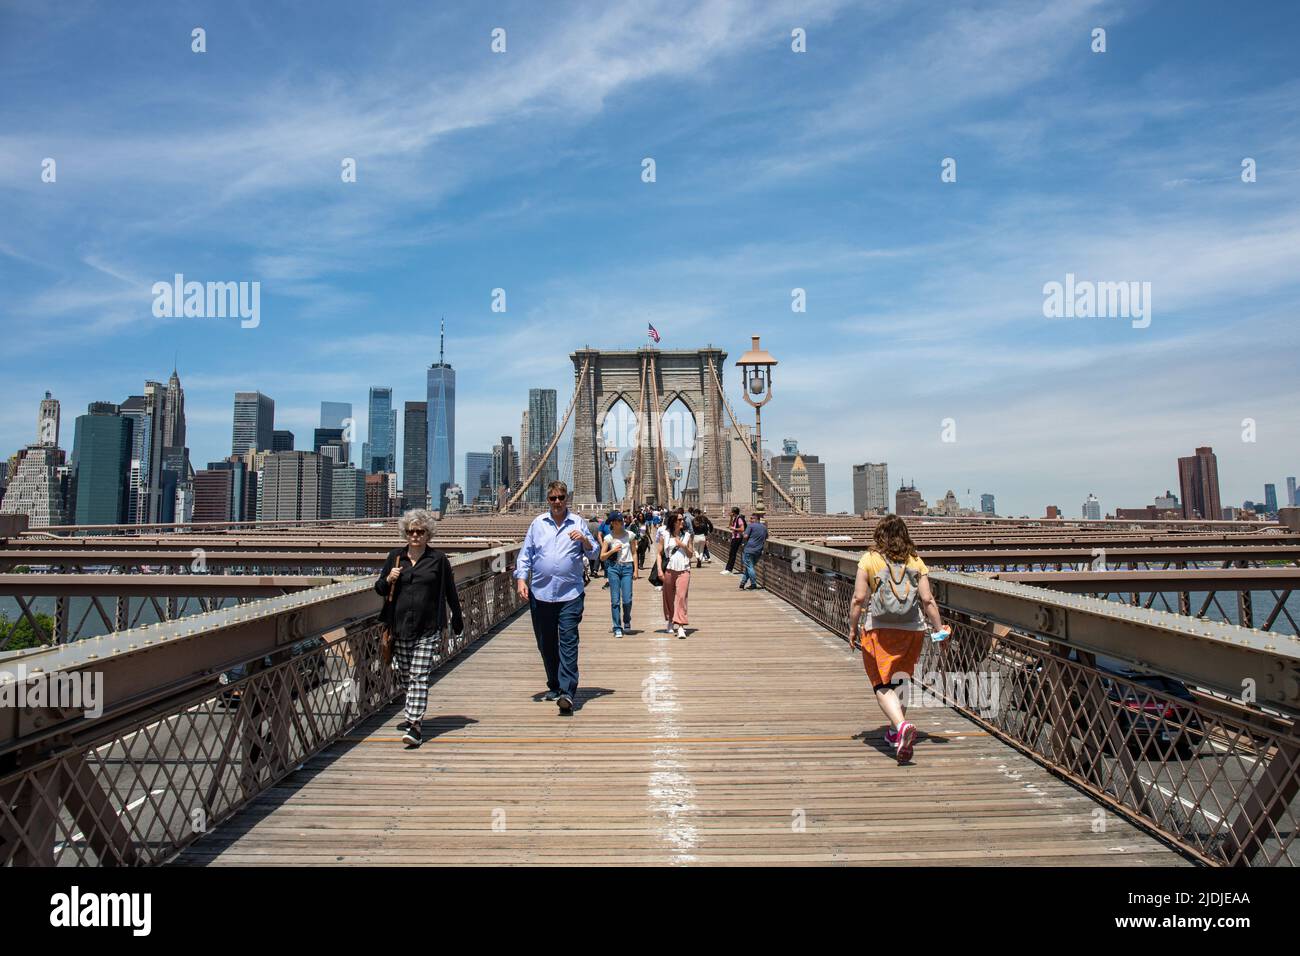 Personnes sur la passerelle piétonnière du pont de Brooklyn avec les immeubles de Manhattan en hauteur en arrière-plan à New York City, États-Unis d'Amérique Banque D'Images